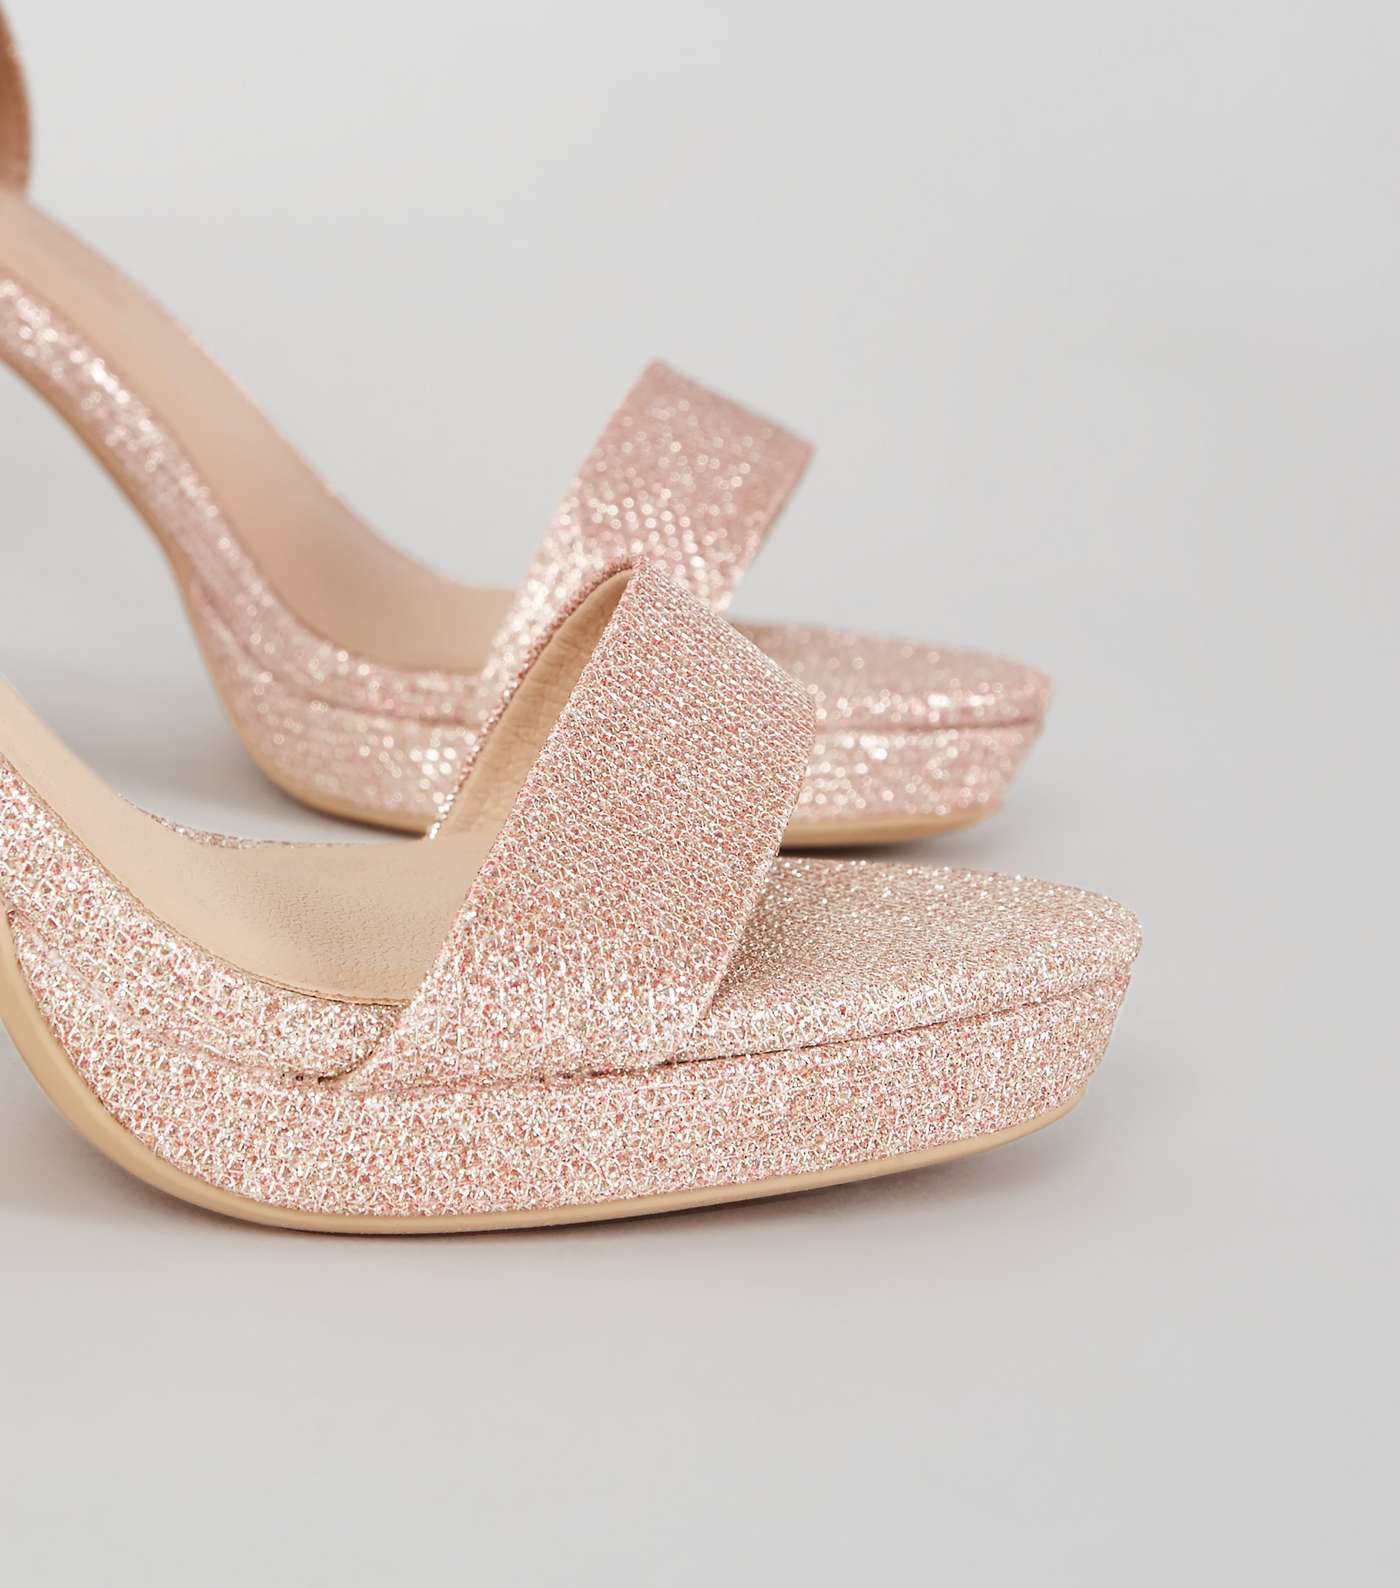 Rose Gold Glitter 2 Part Platform Heeled Sandals Image 4